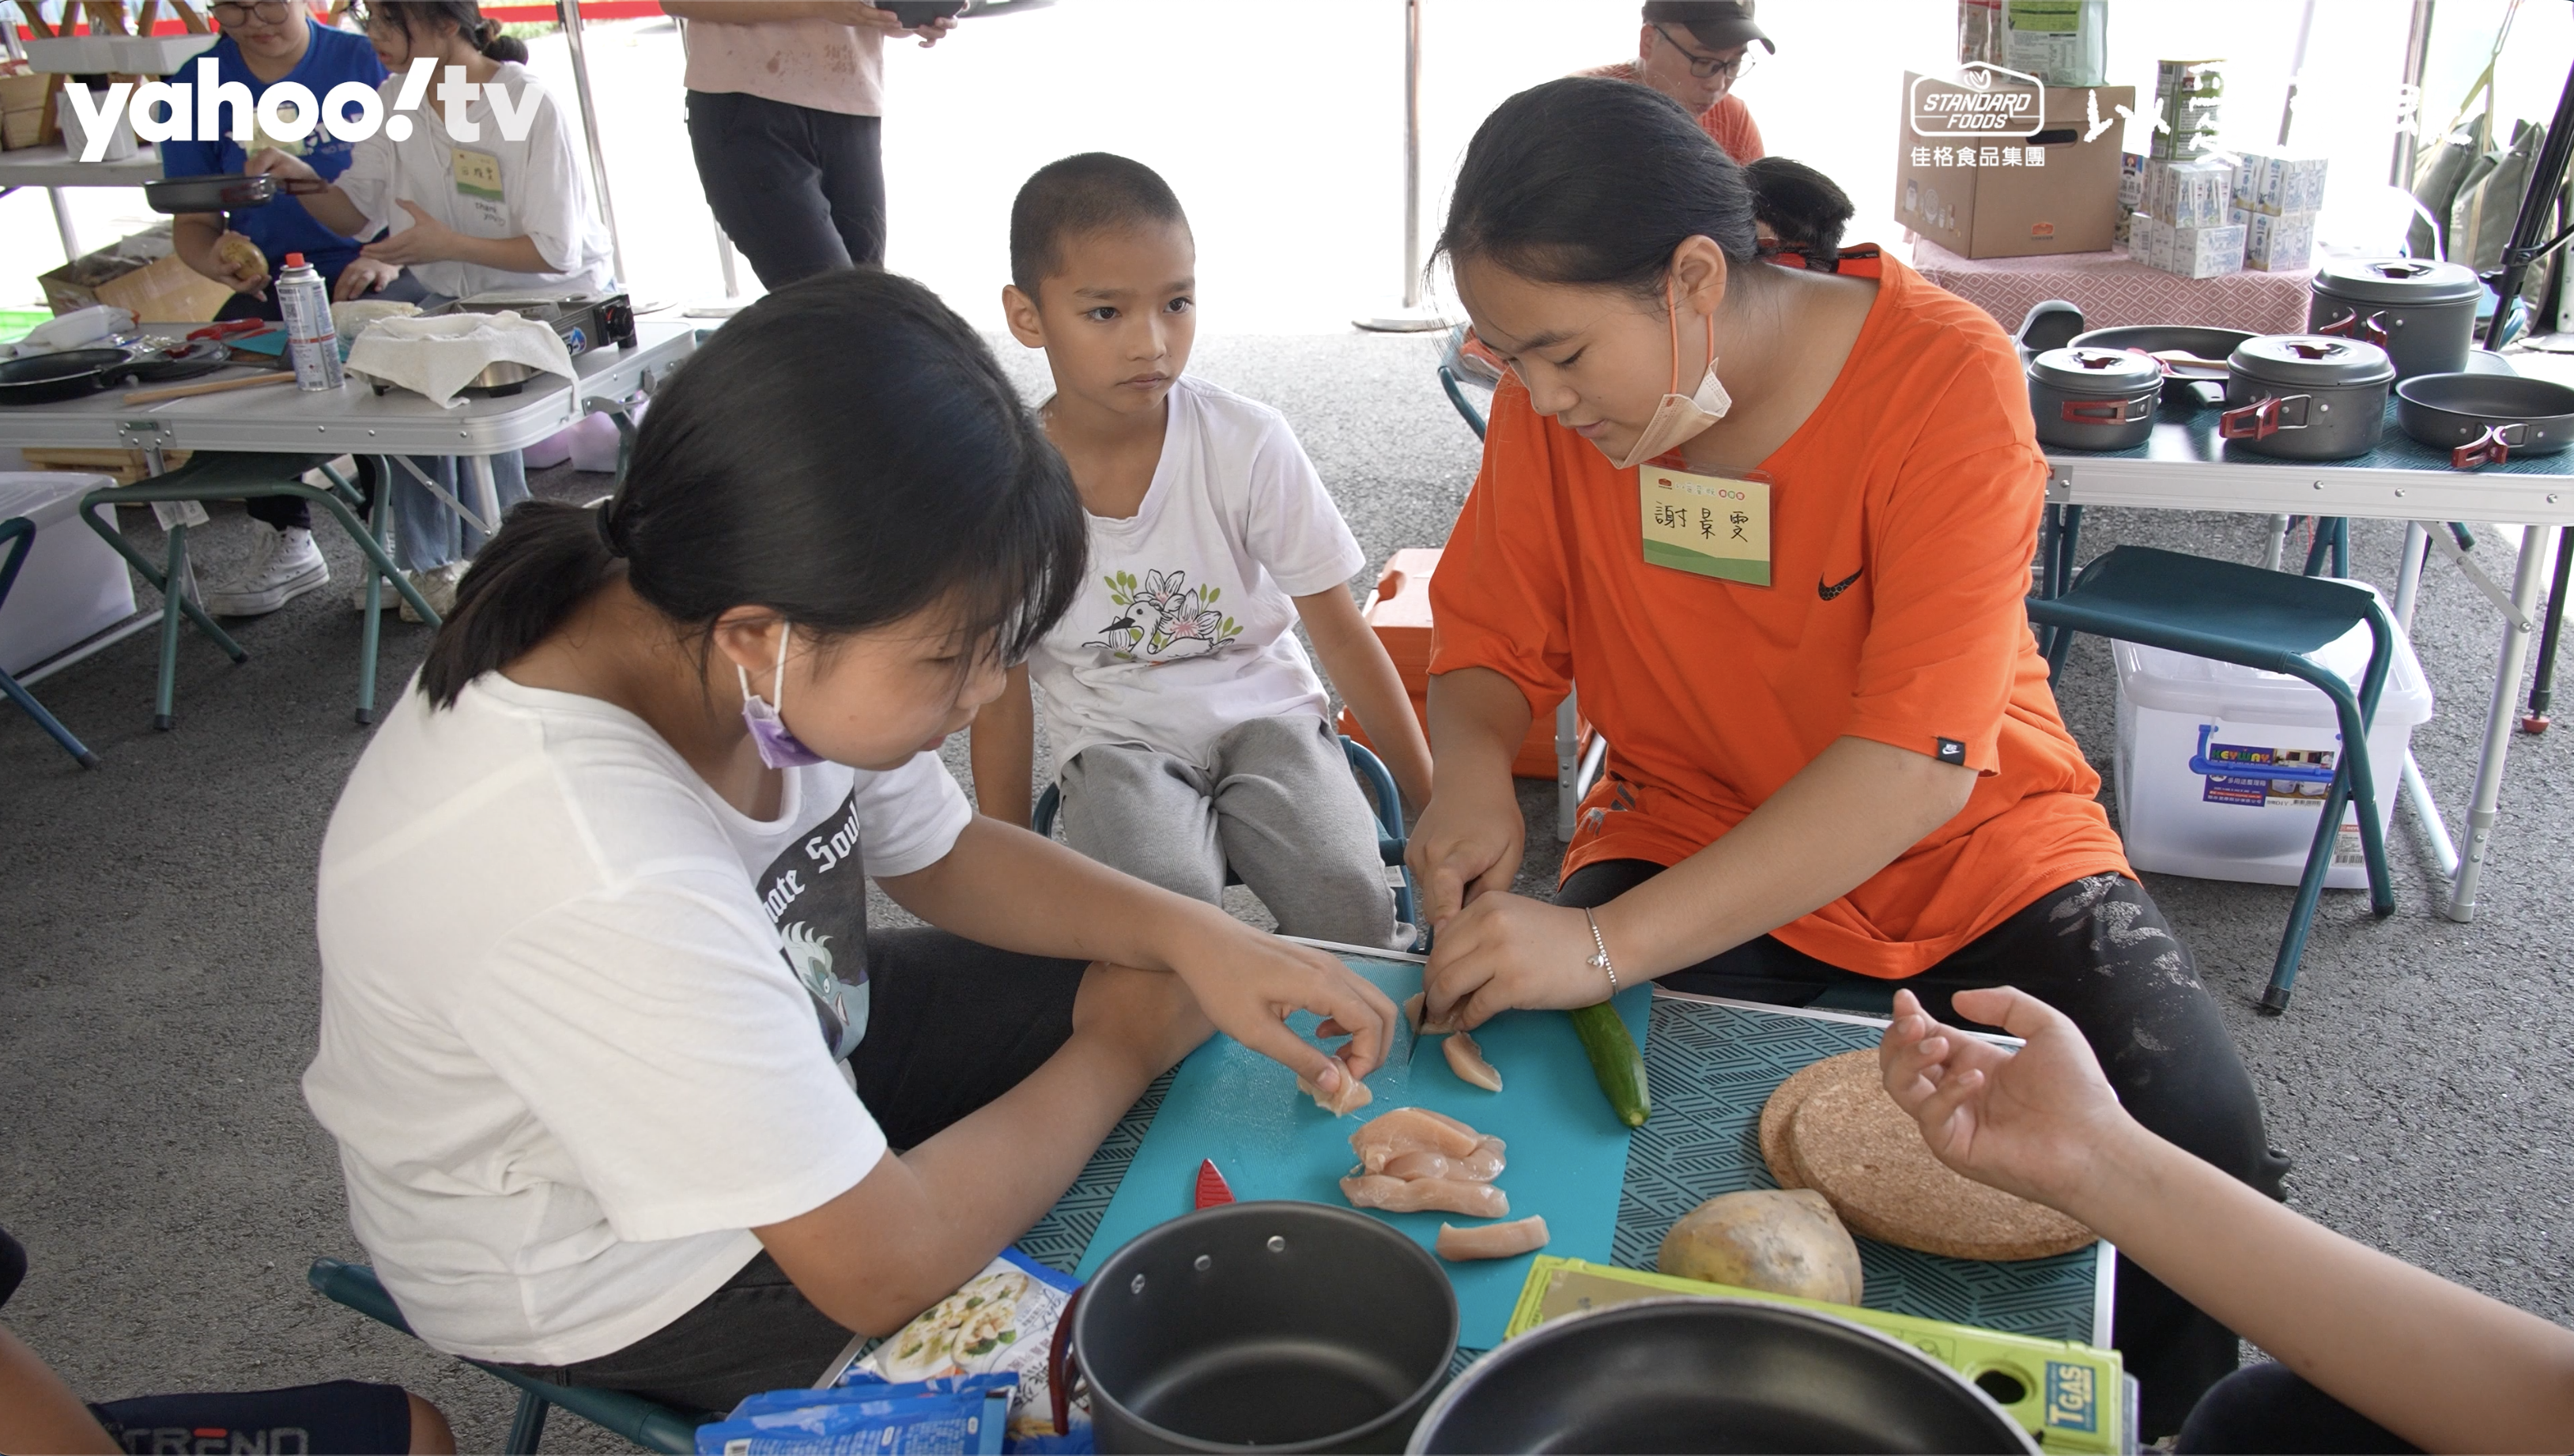 ▲食育營重點活動之一，參與學童自行挑選在地食材料理，是營養教育很重要的一環。 圖/擷取佳格「以愛灌溉」食育營影片